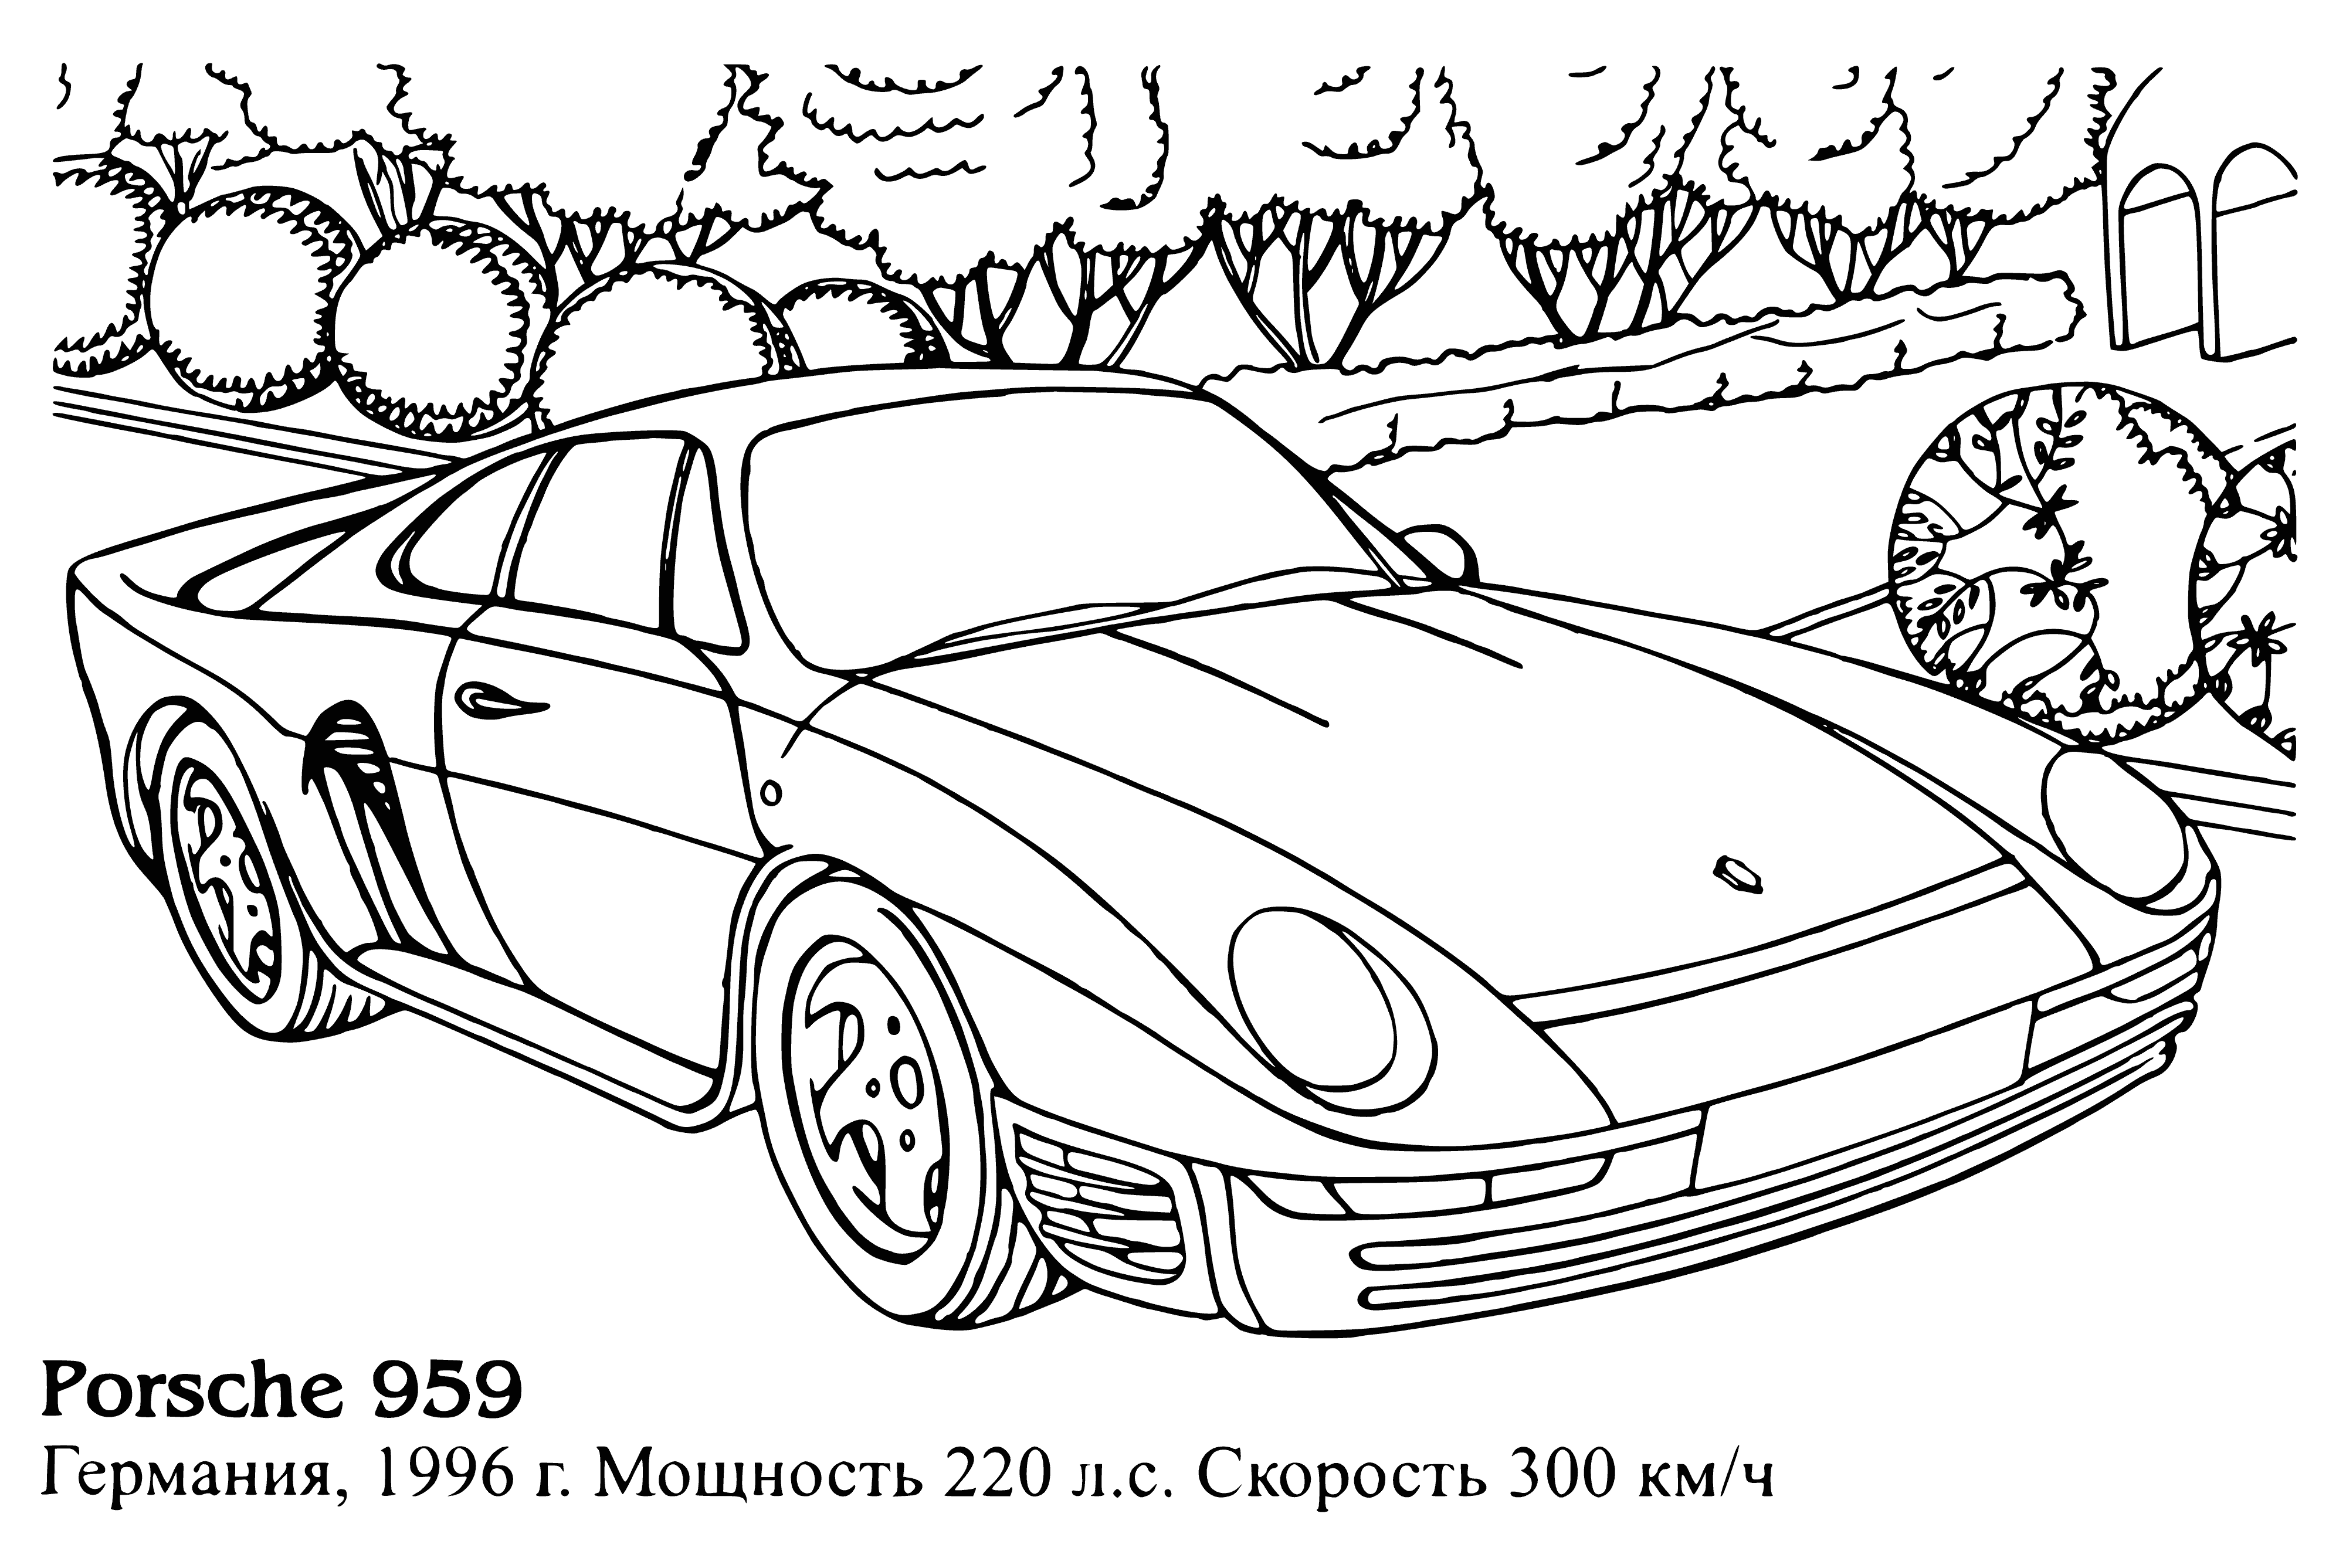 Porsche 959 coloring page